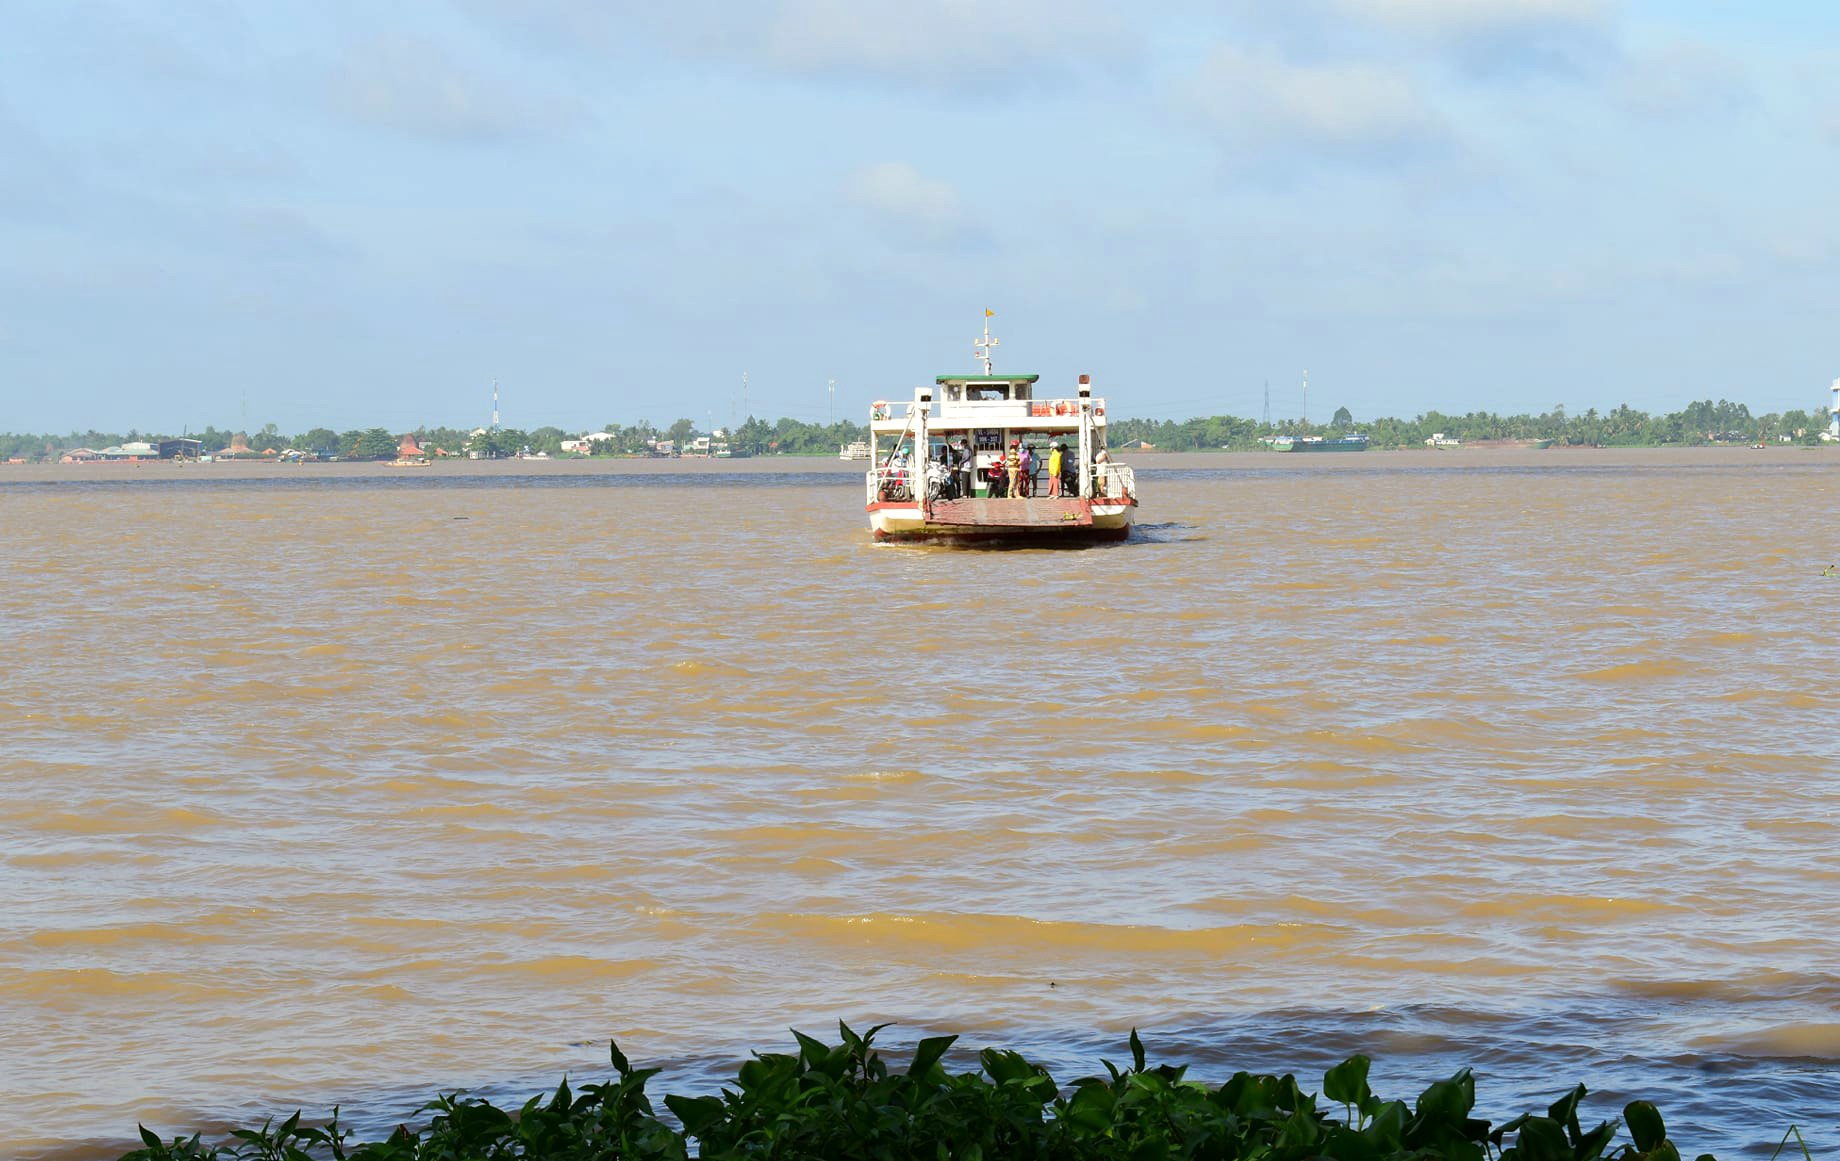 Lũ trên sông Cửu Long trong năm nay sẽ ở mức thấp. Ảnh: Nguyễn Thủy.